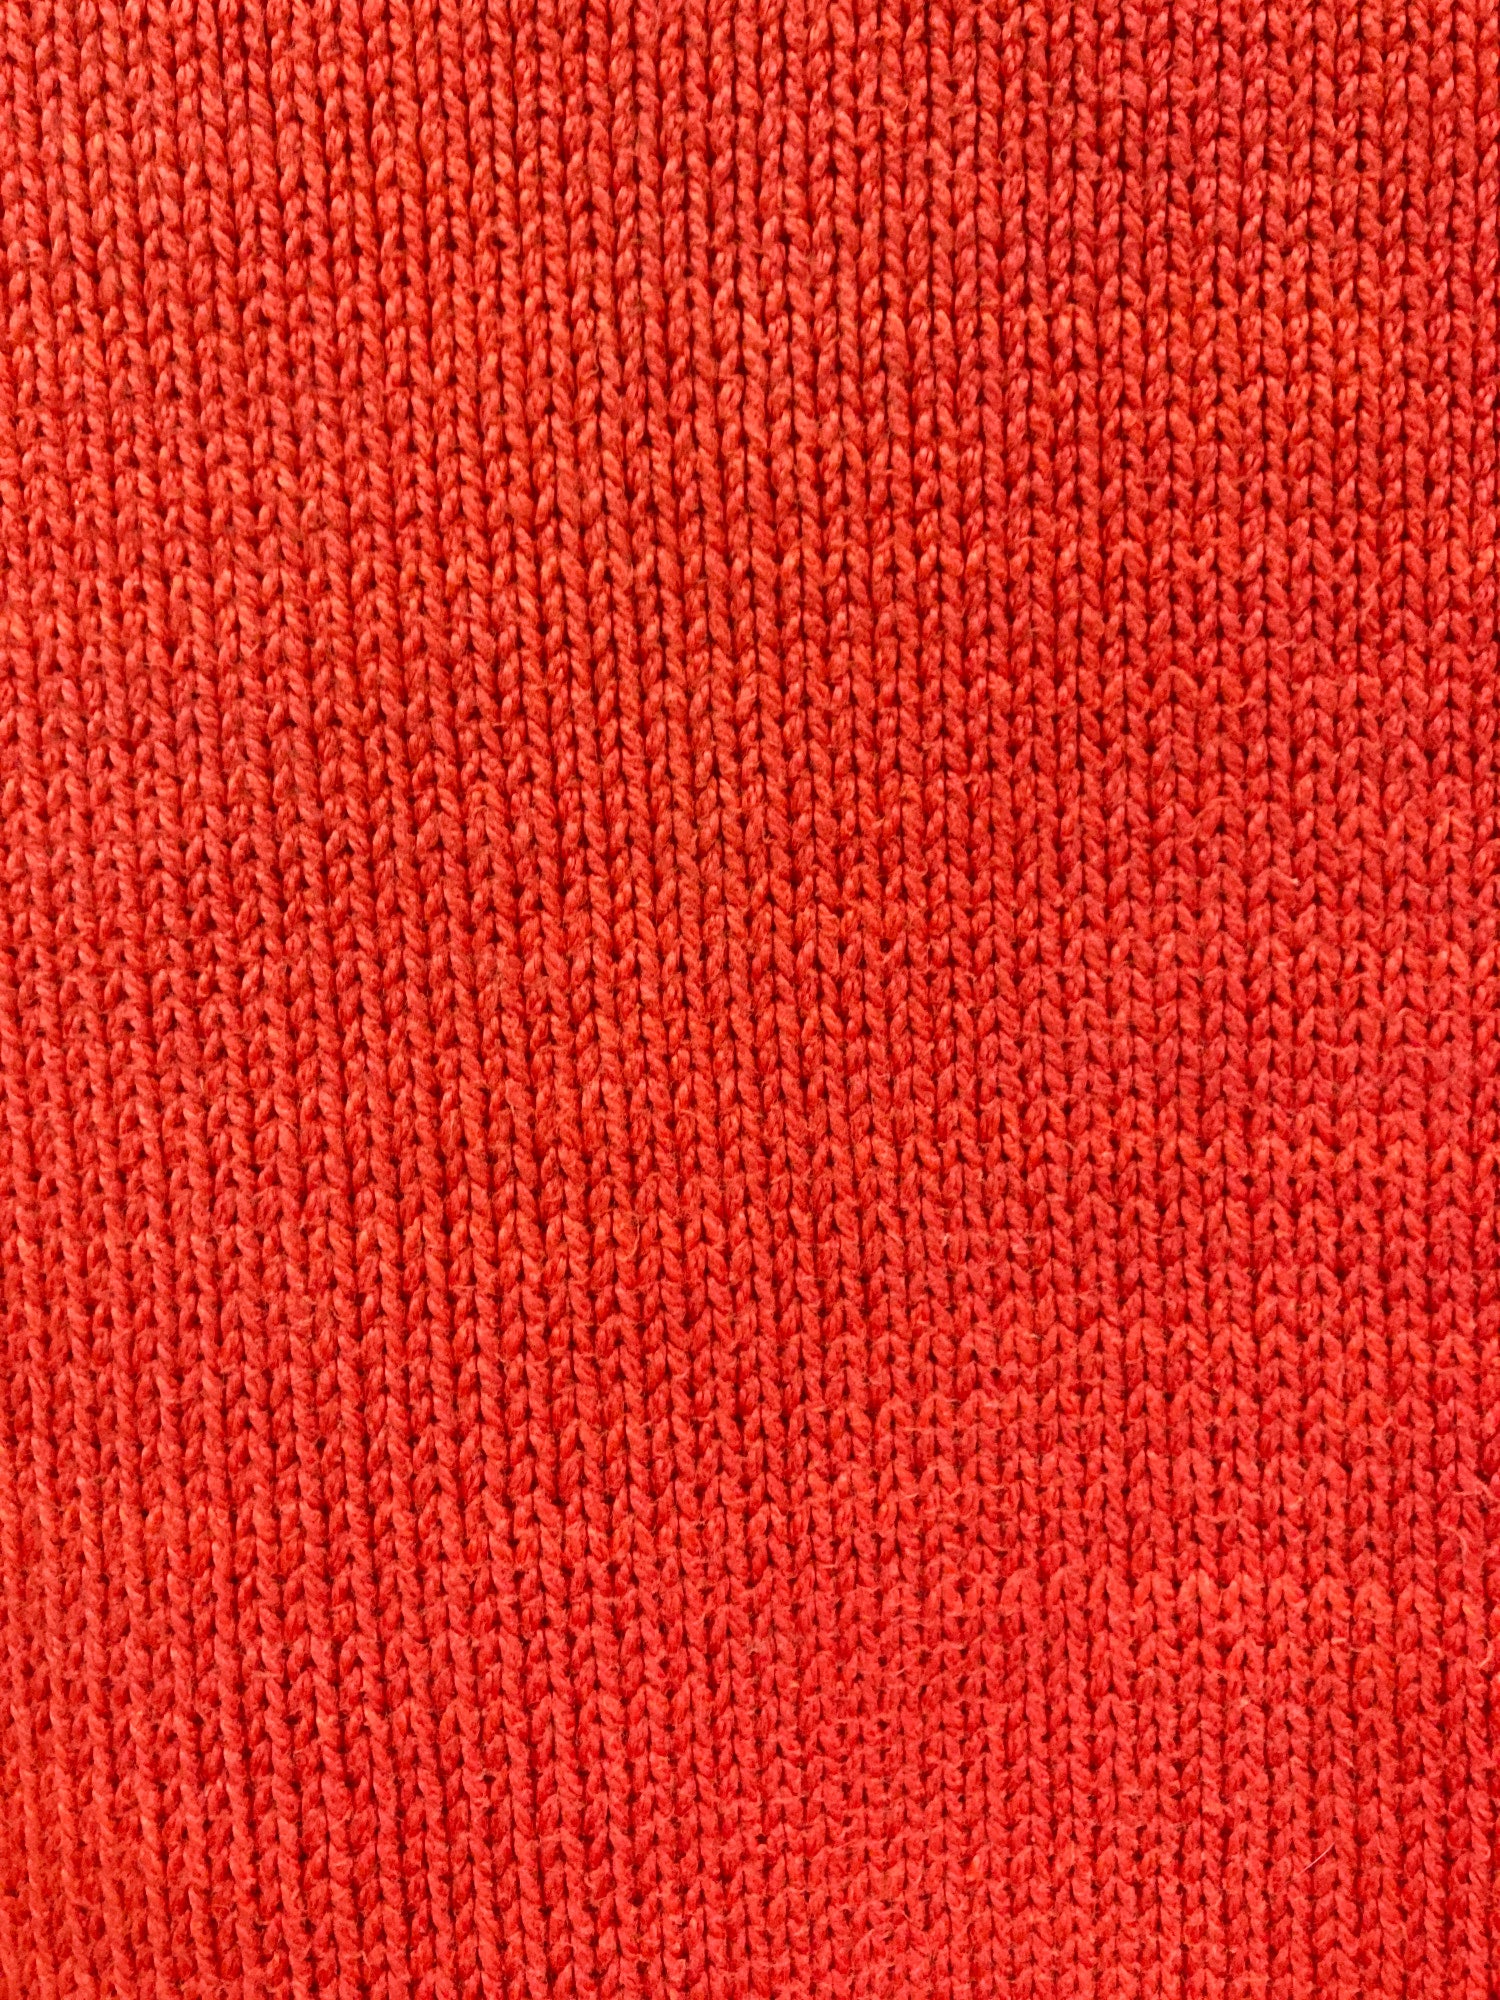 Tricot Comme des Garcons 1980s reddish orange heavy cotton crew neck jumper